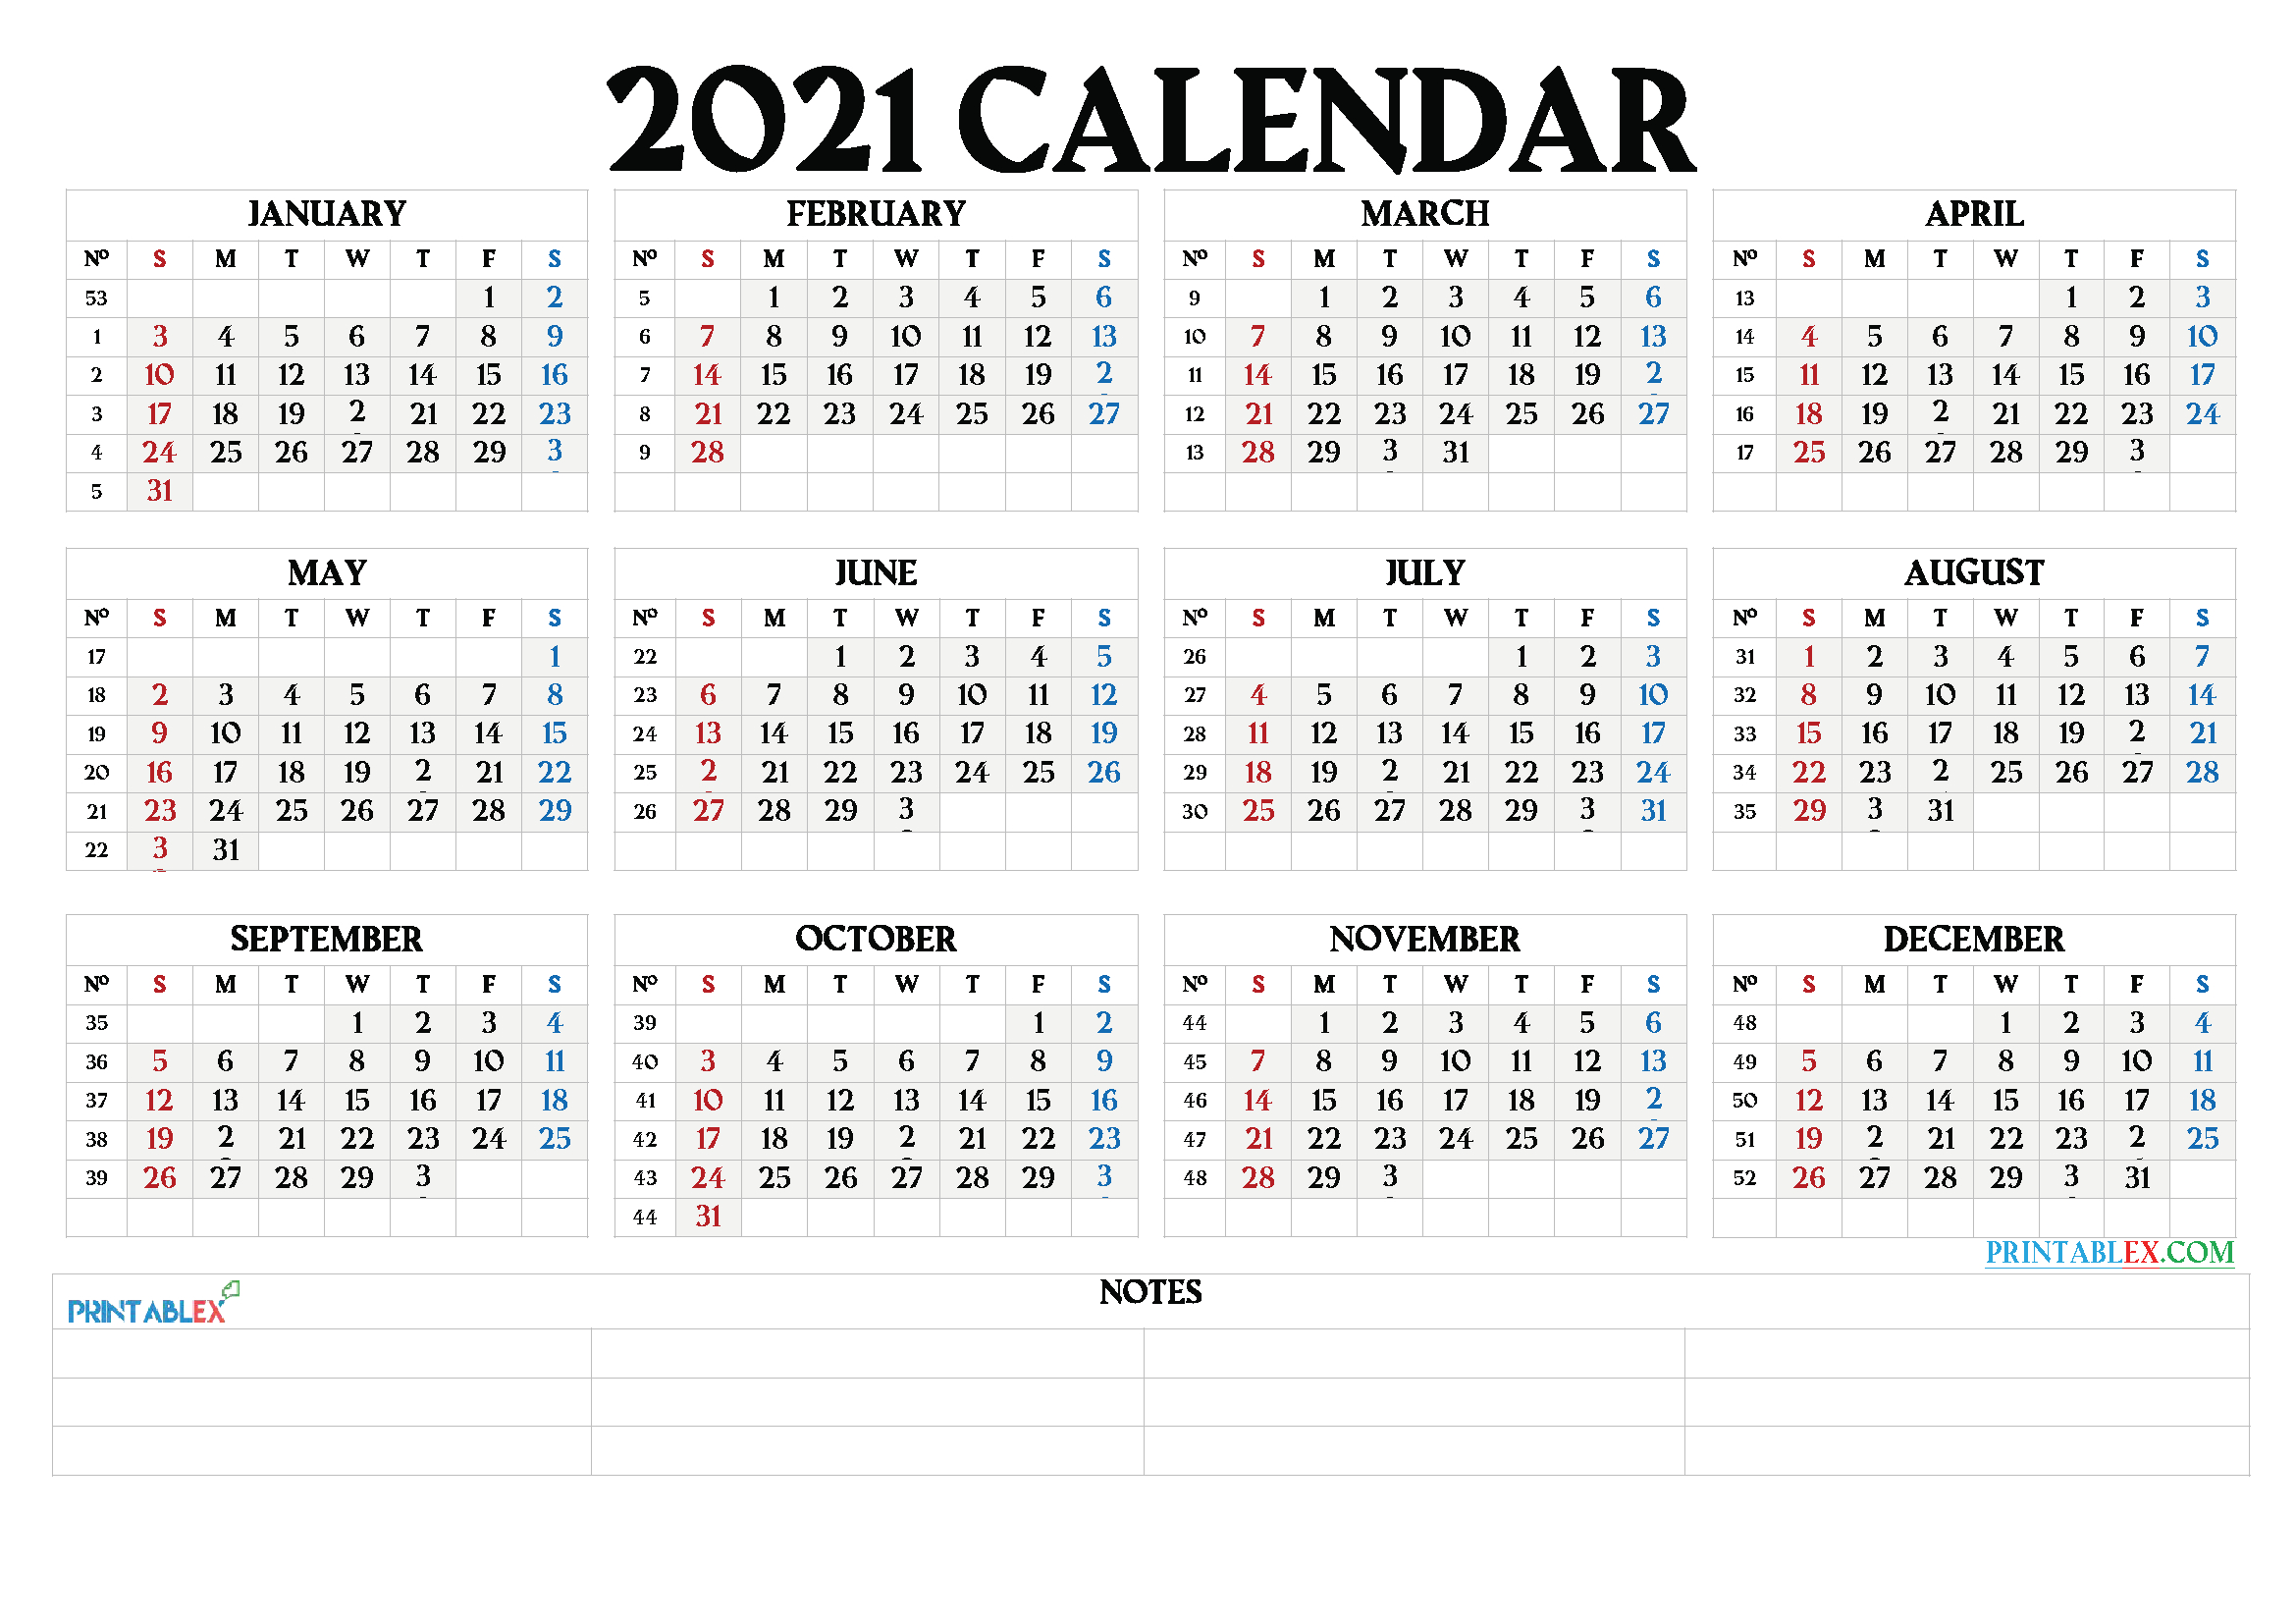 Printable 2021 Calendar By Month - 21Ytw66-2021 Monthly Calendar Printable Free